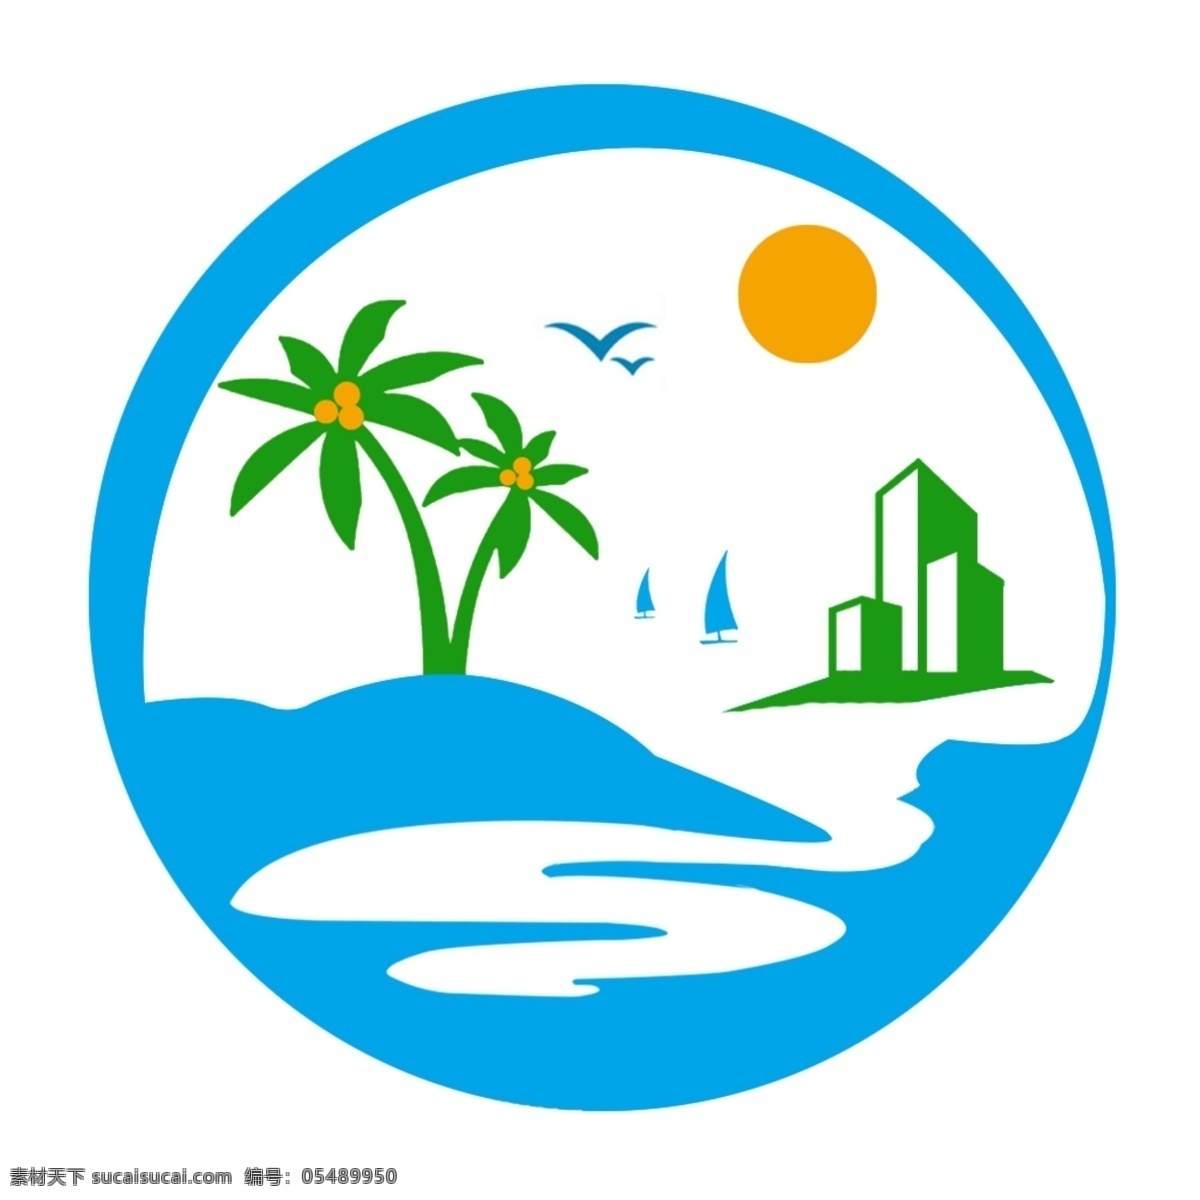 海南 旅游度假 图标 海南旅游度假 山水 旅行 旅游 度假 椰子 简洁 精美 简单 标准 logo 视觉 创意 创作 抽象 个性 时尚 白色